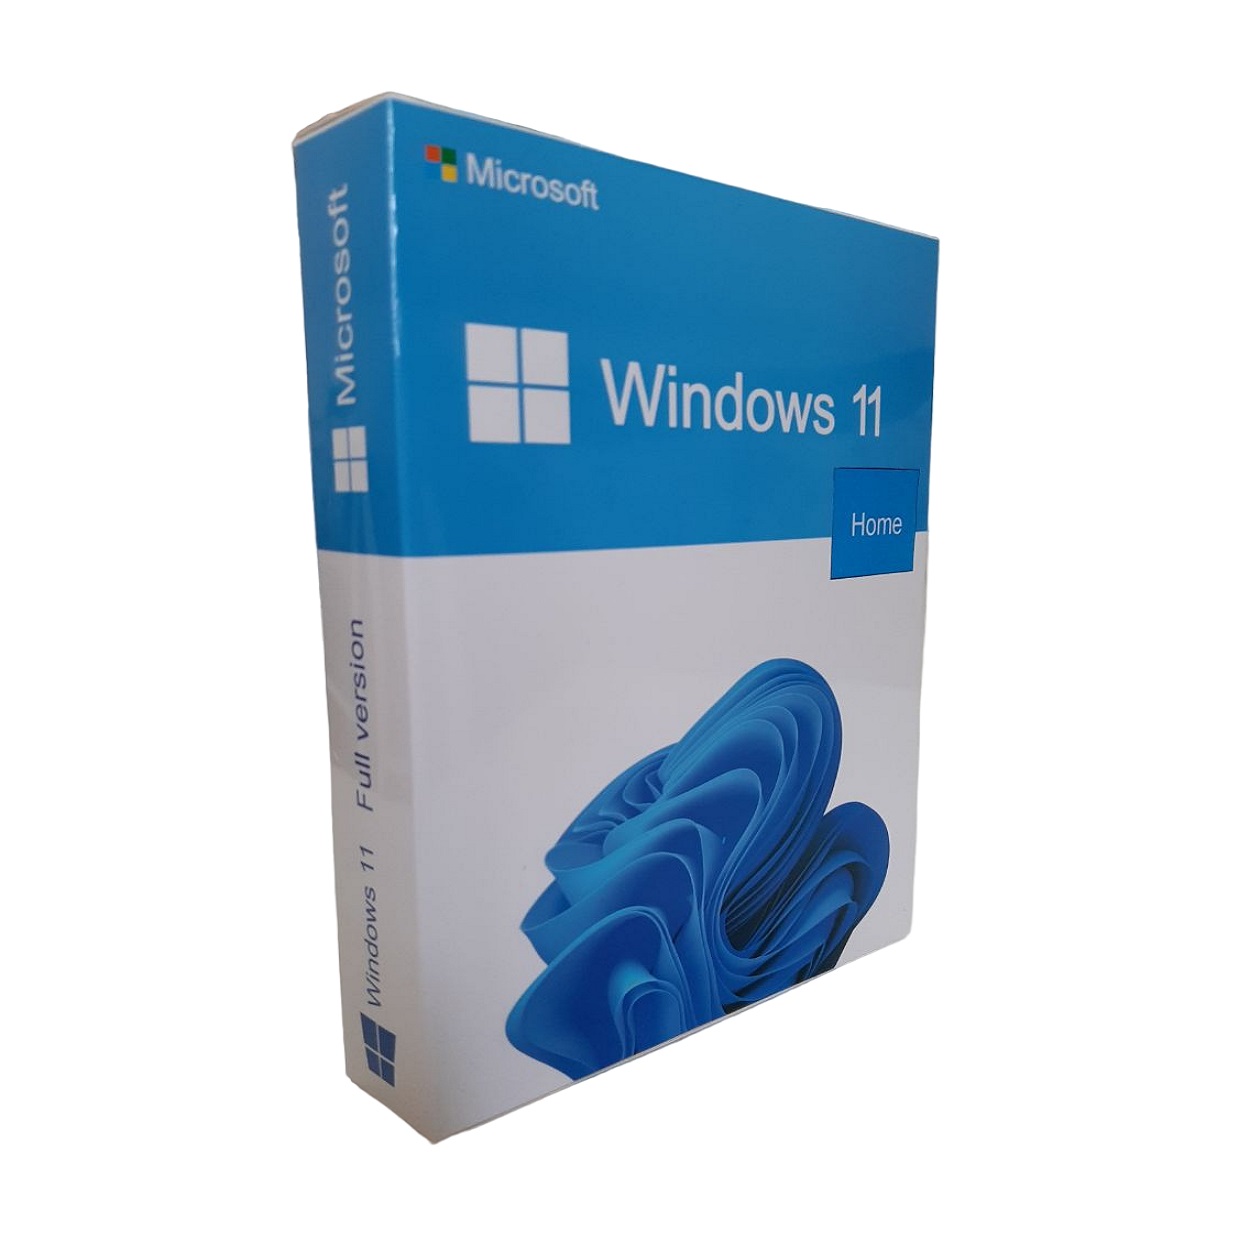 سیستم عامل ویندوز 11 نسخه Home لایسنس OEM نشر آورکام